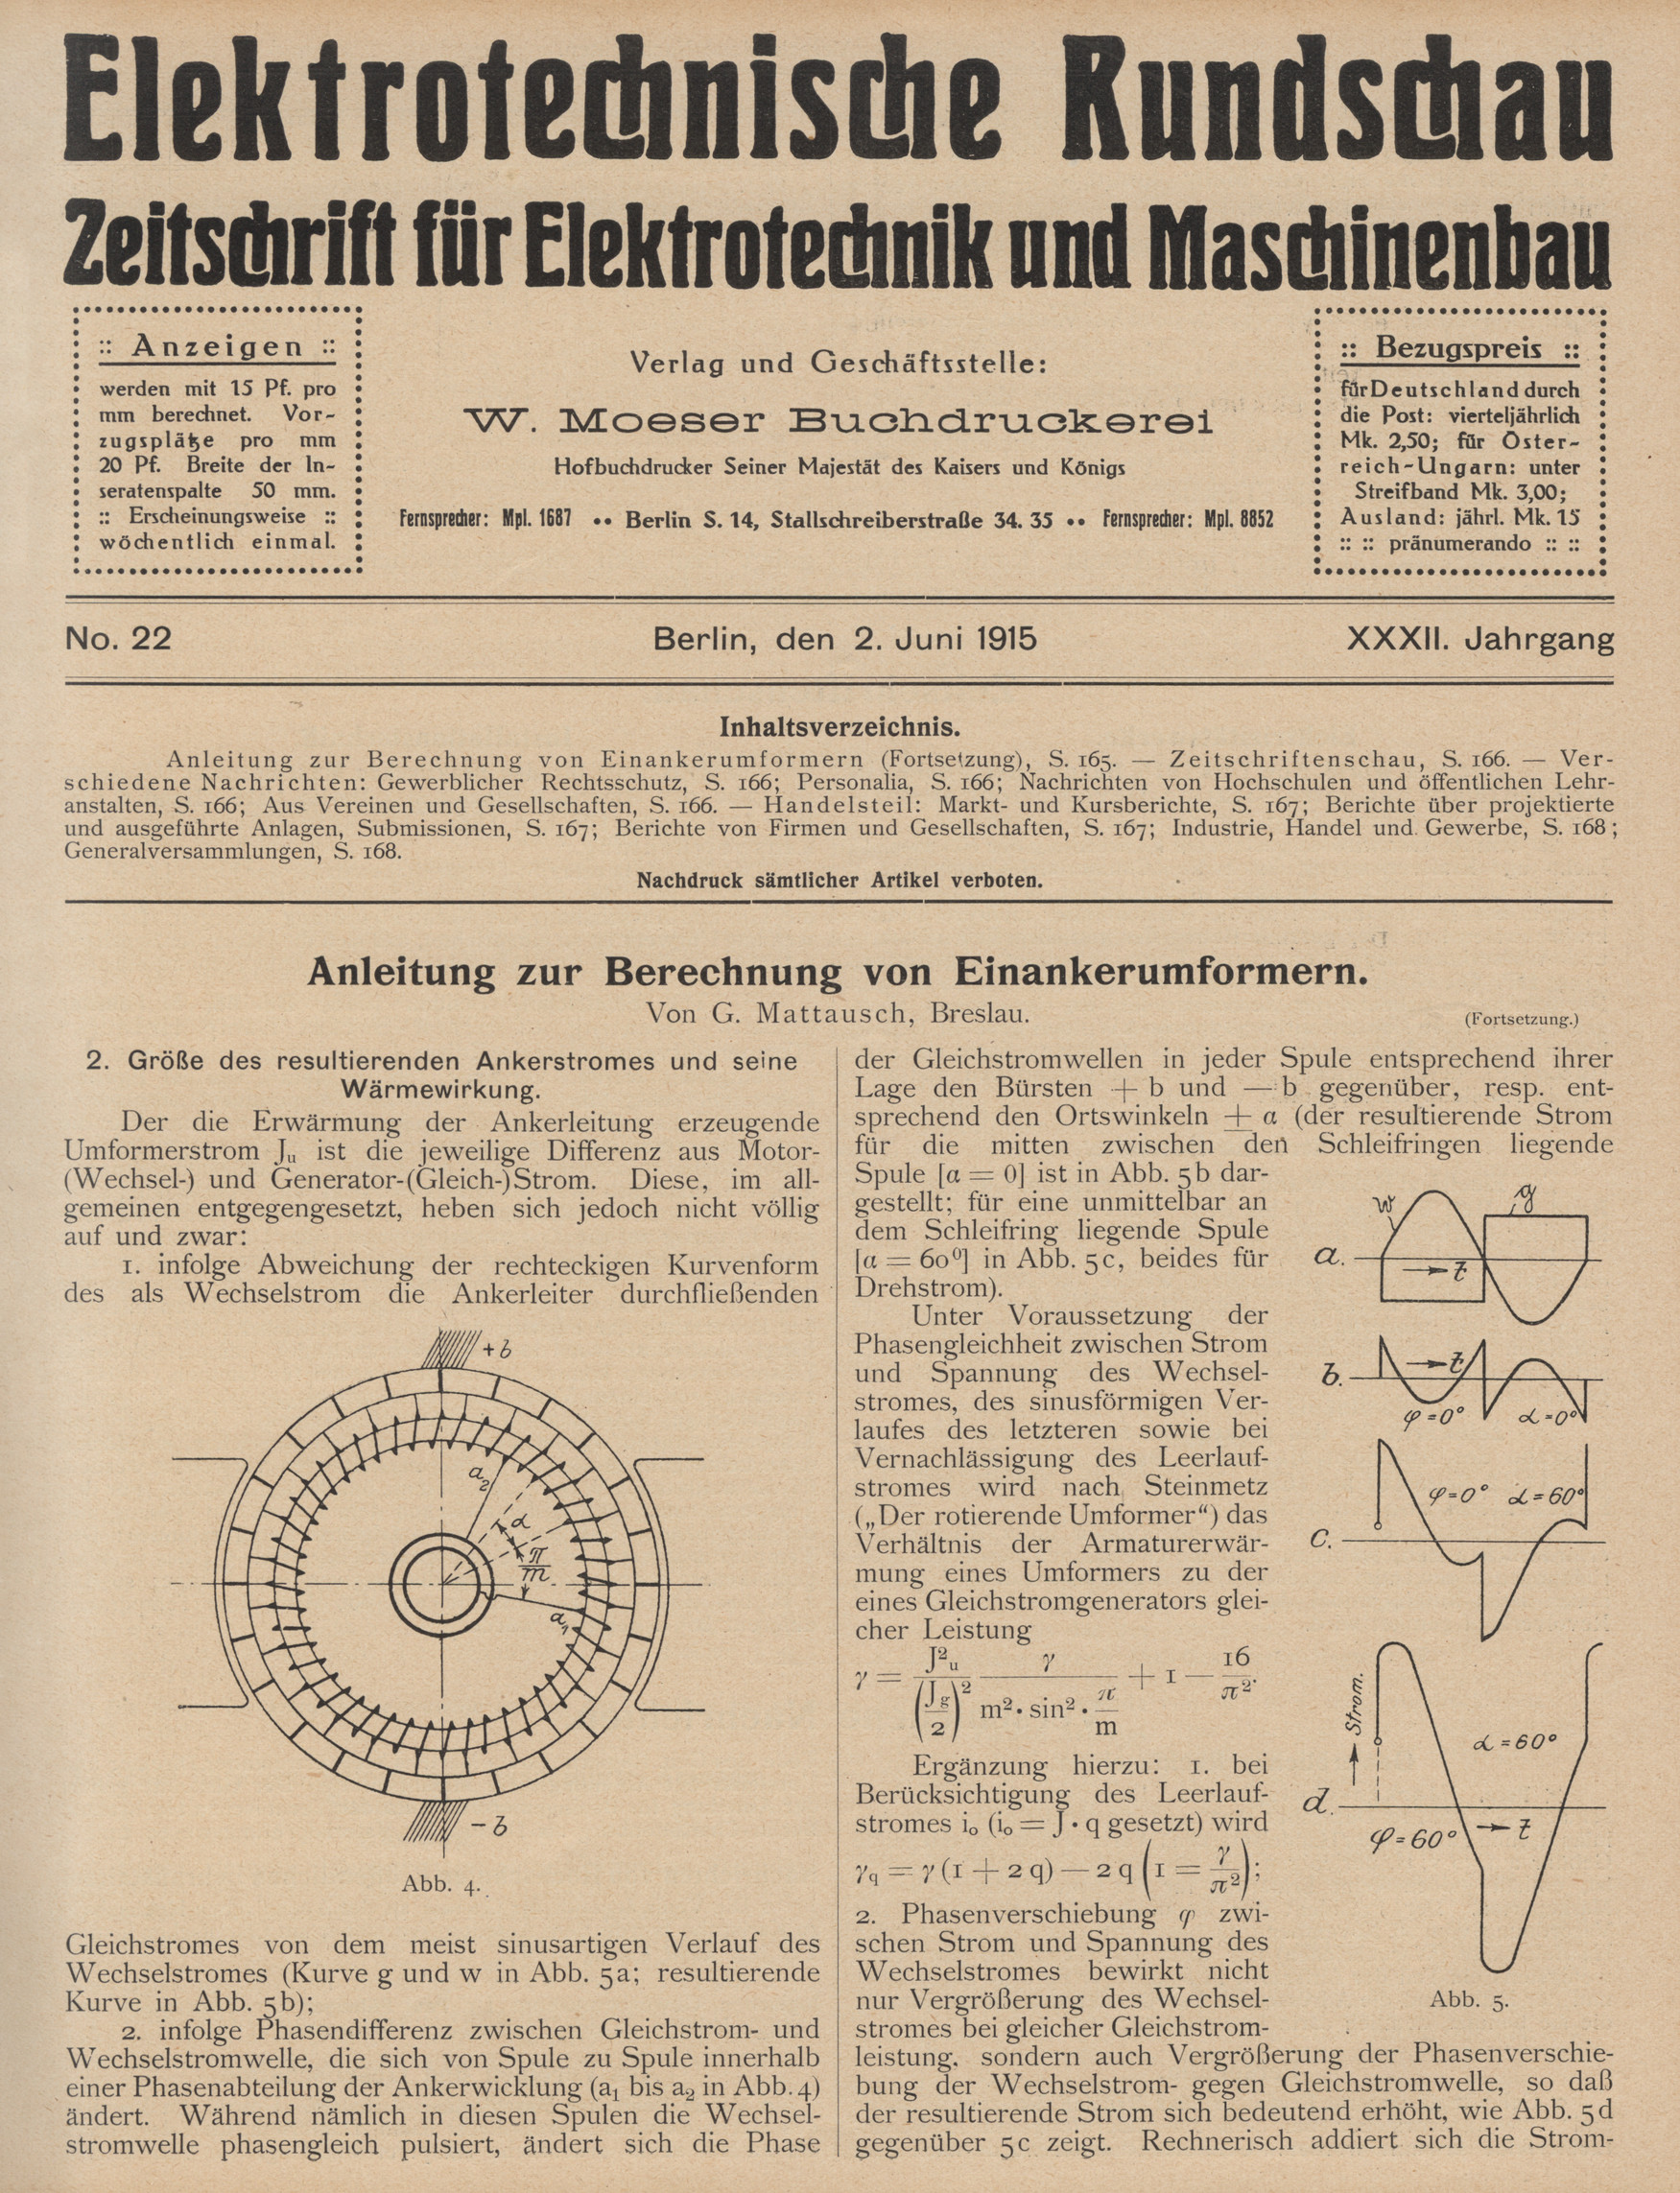 Elektrotechnische Rundschau : Zeitschrift für Elektrotechnik und Maschinenbau + Polytechnische Rundschau, No. 22, XXXII. Jahrgang